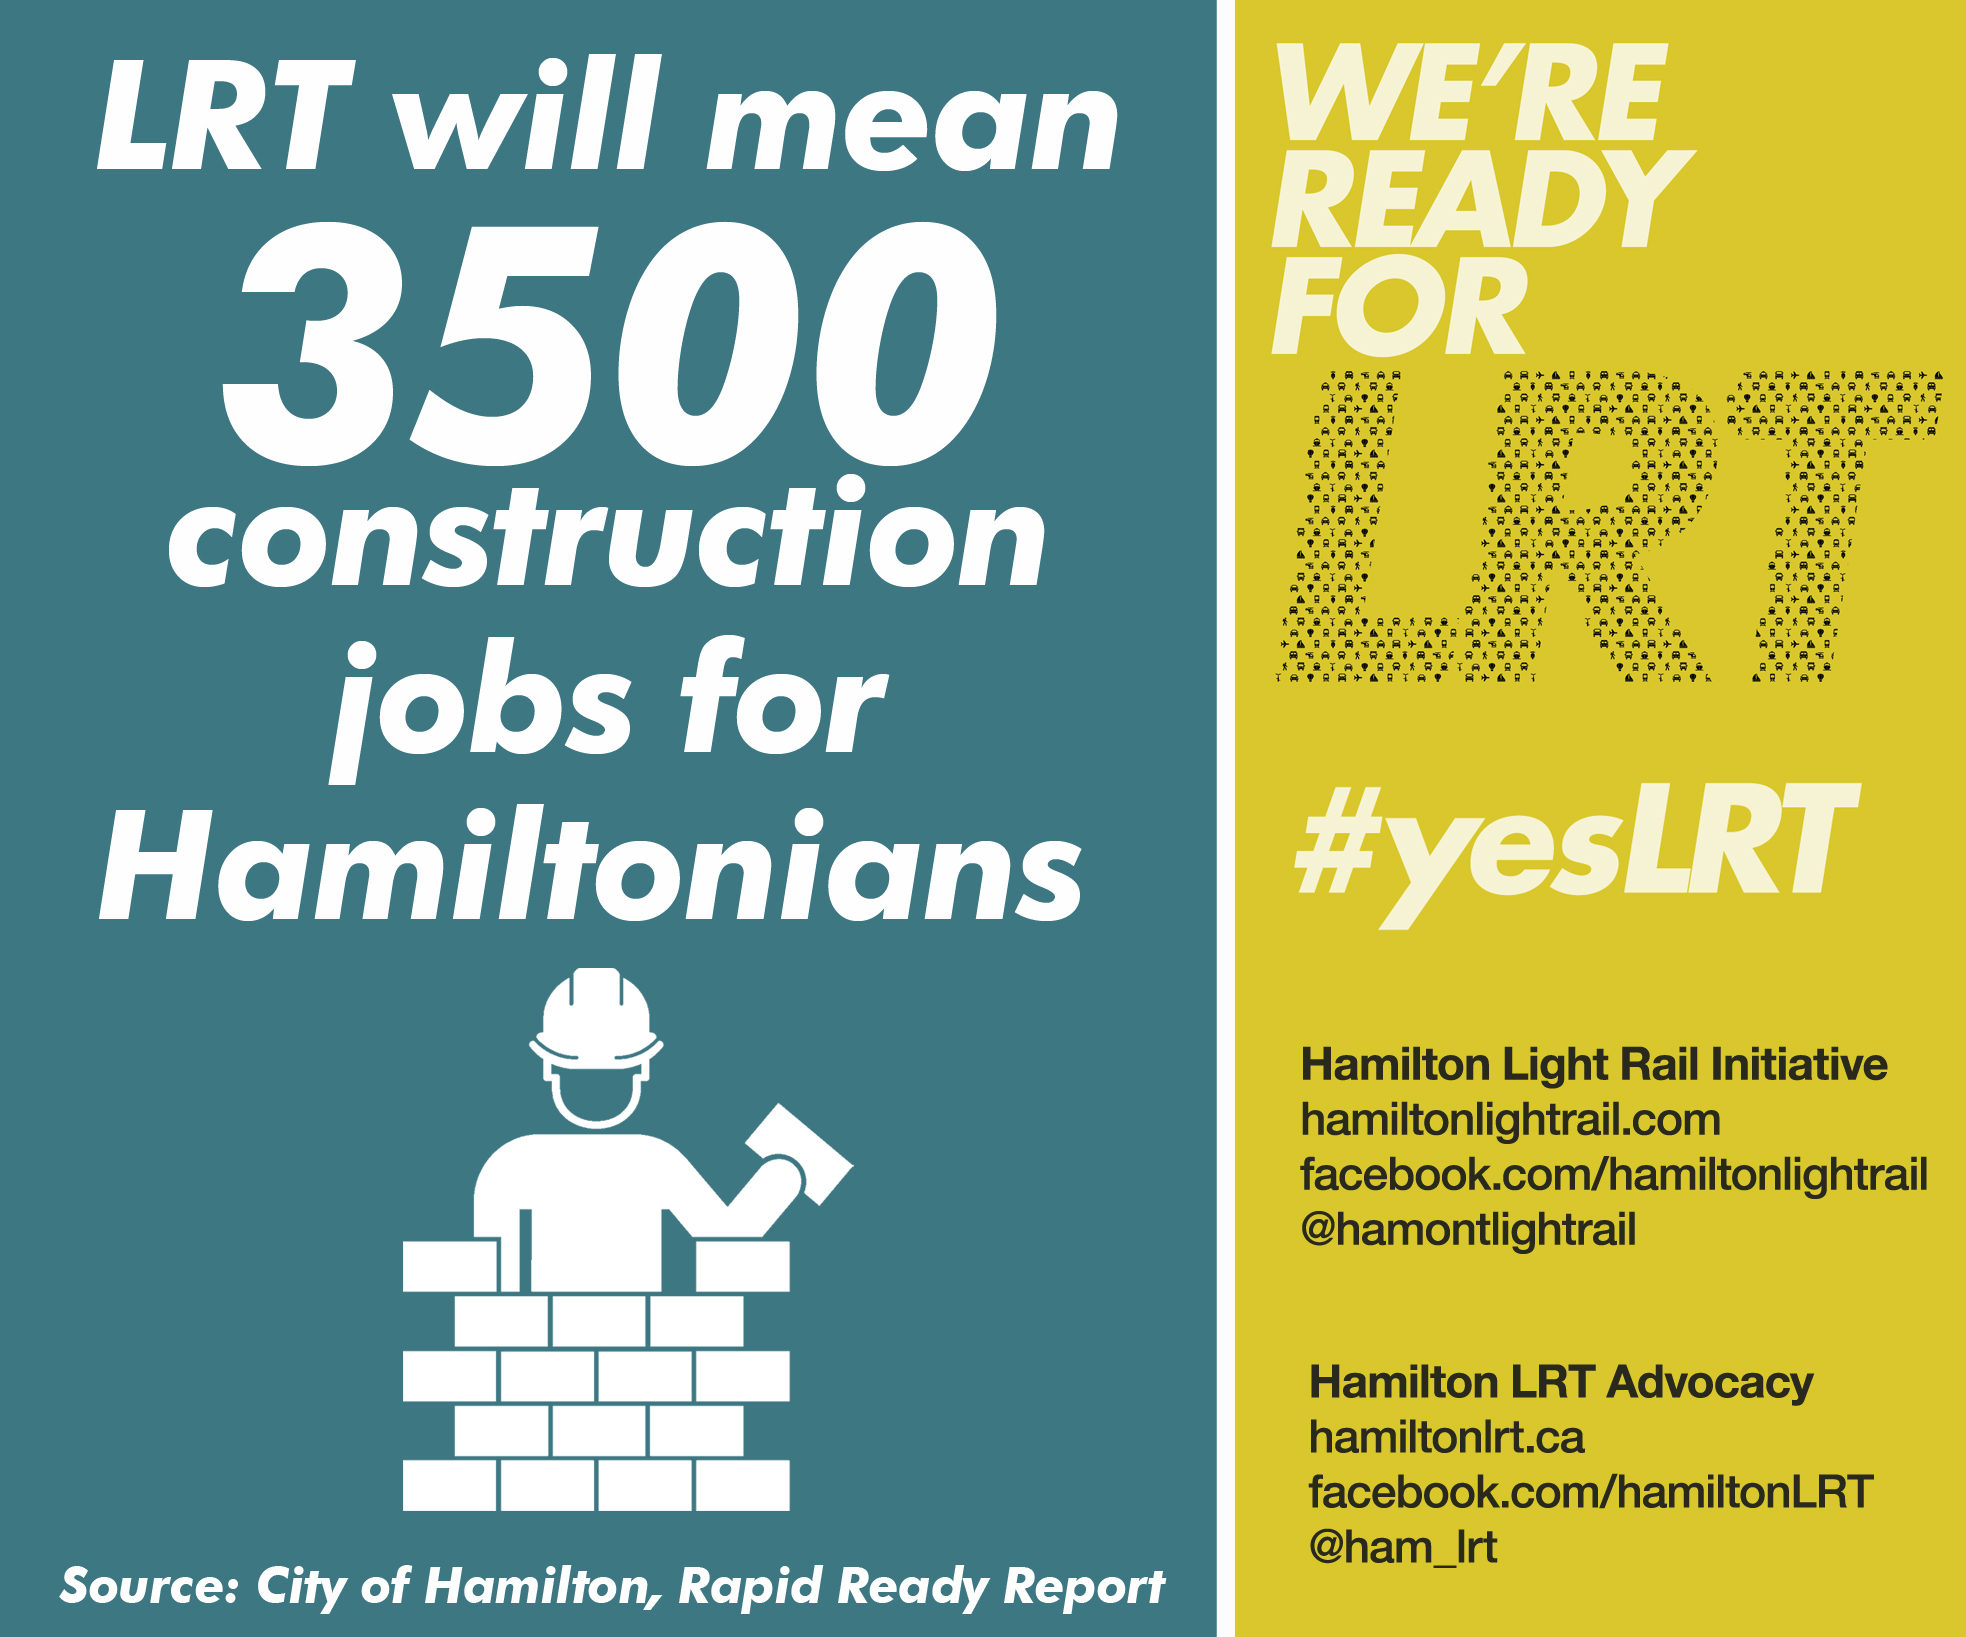 LRT will mean 3500 construction jobs for Hamiltonians